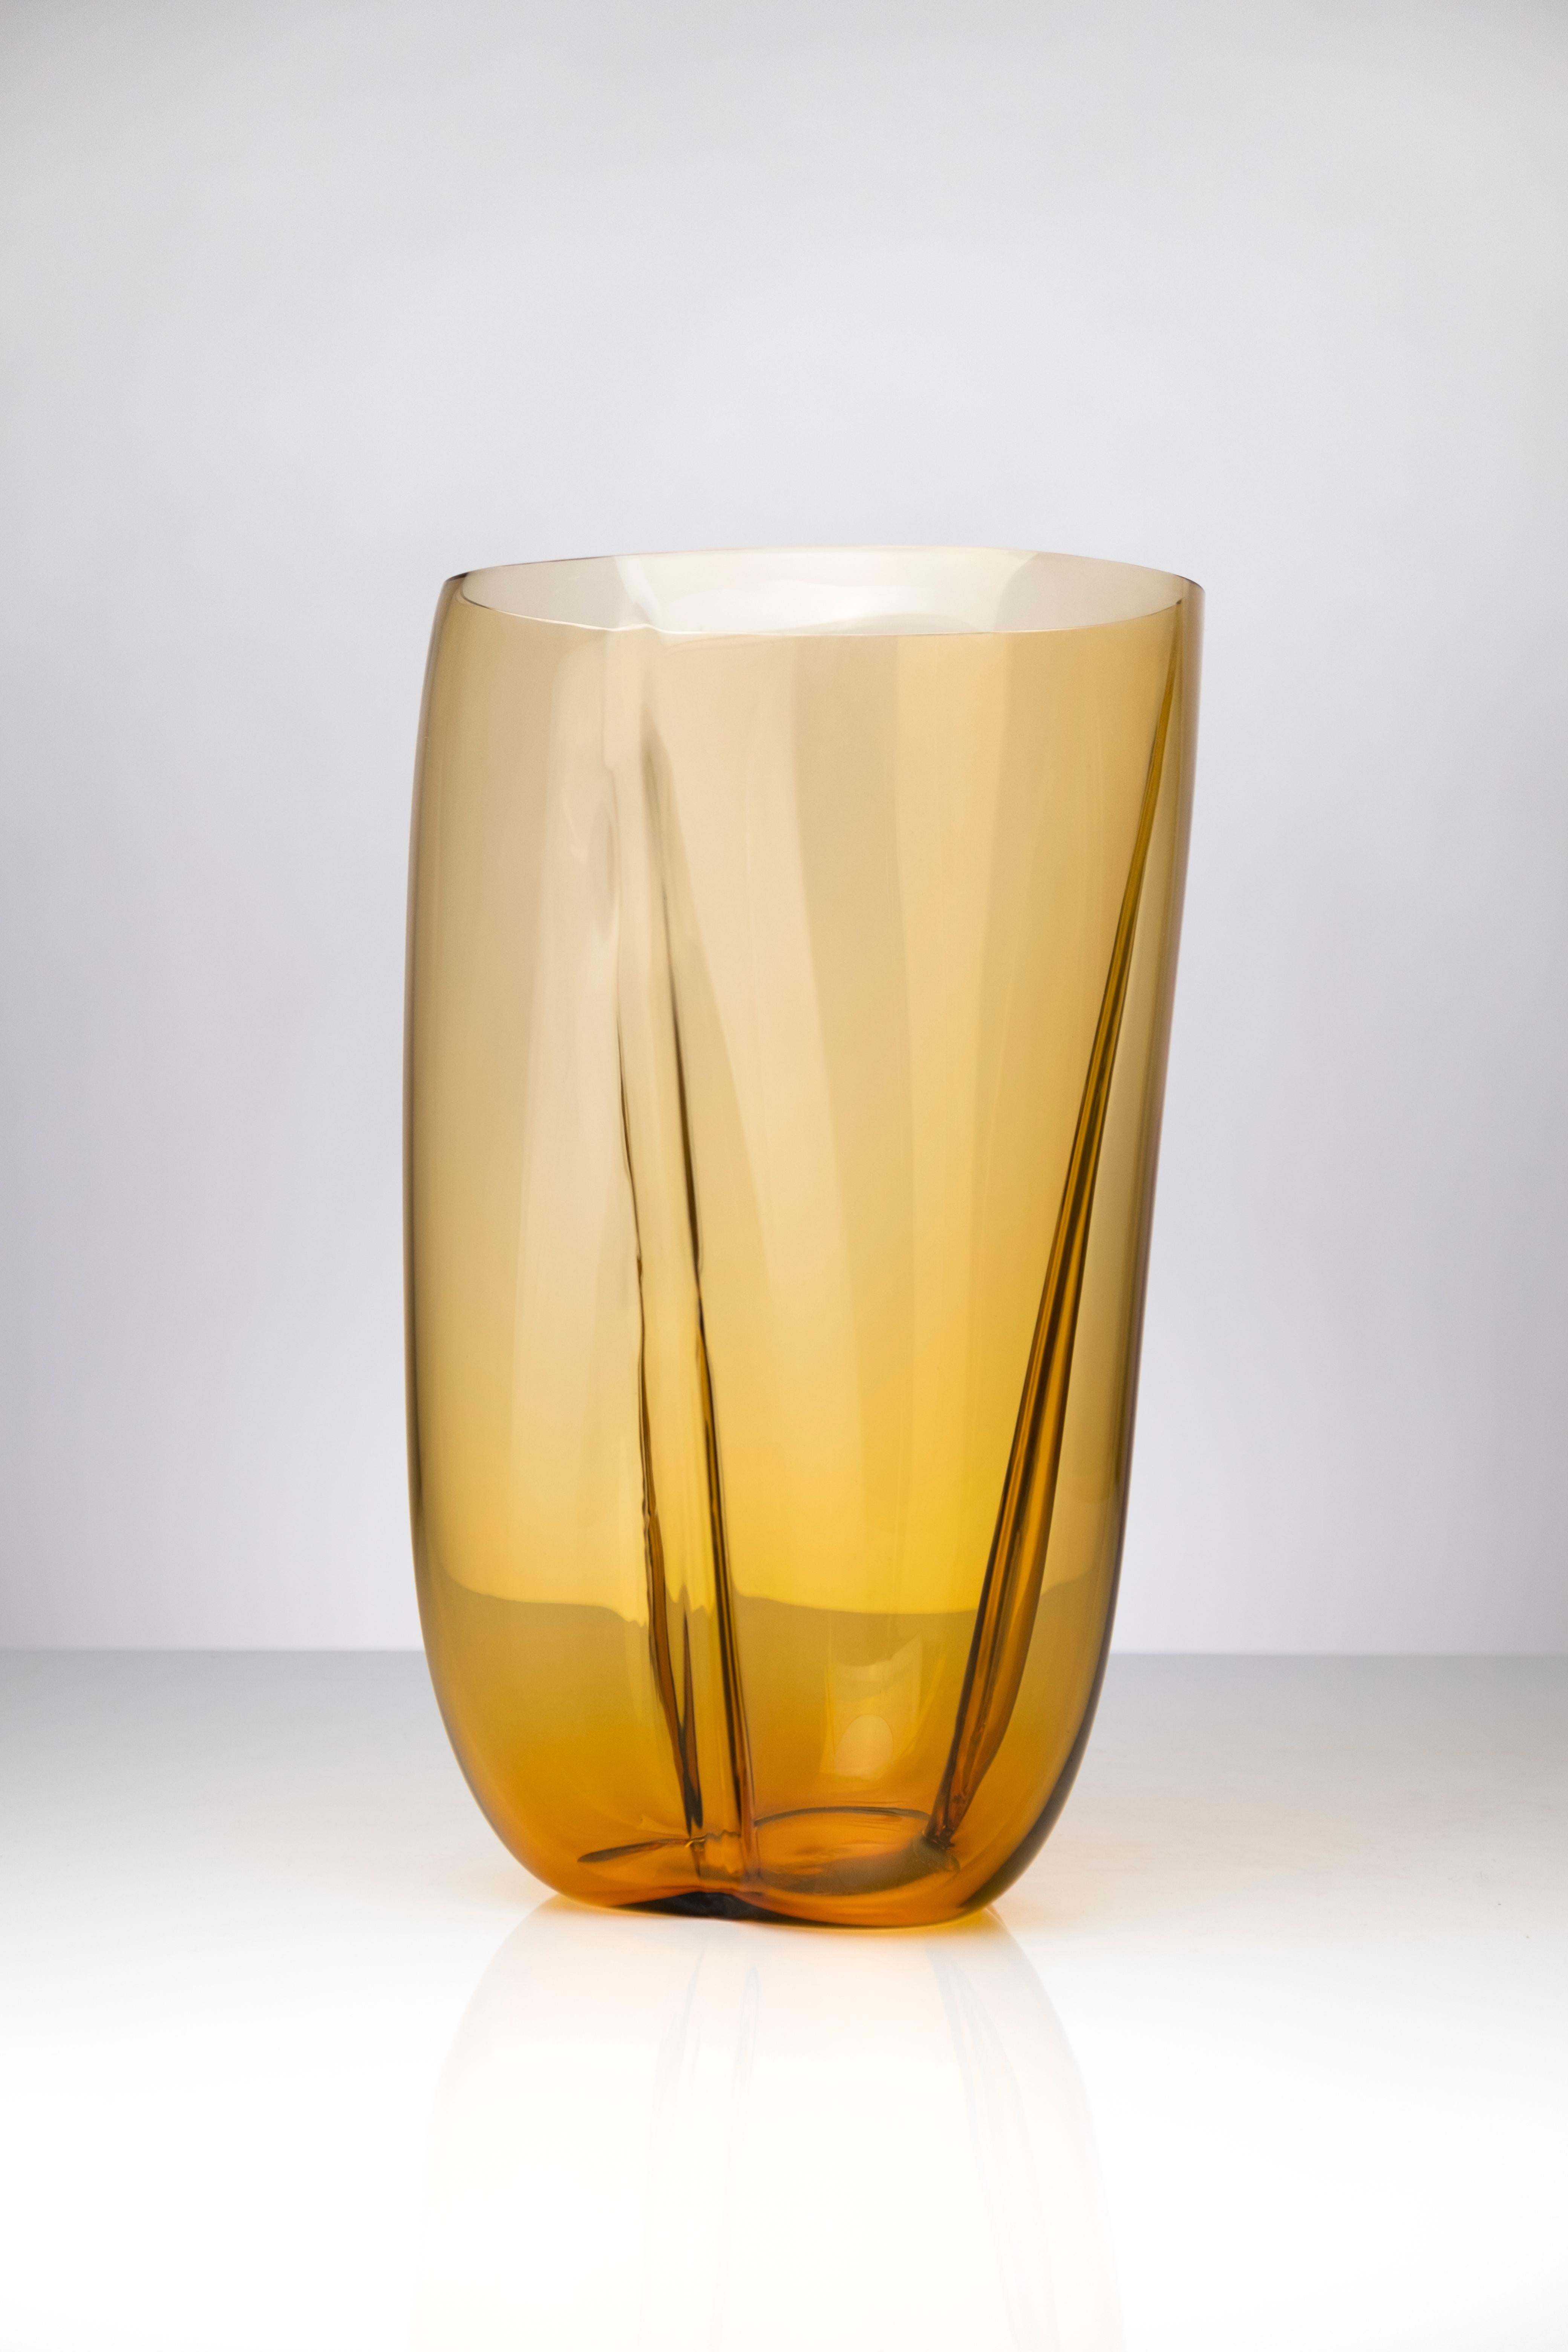 Grand vase Petalo Golden de Purho
Dimensions : D20 x H40 cm
Matériaux : Verre.
D'autres couleurs et dimensions sont disponibles.
Purho est un nouveau protagoniste du design made in Italy, un travail de synthèse, une recherche qui dure depuis des